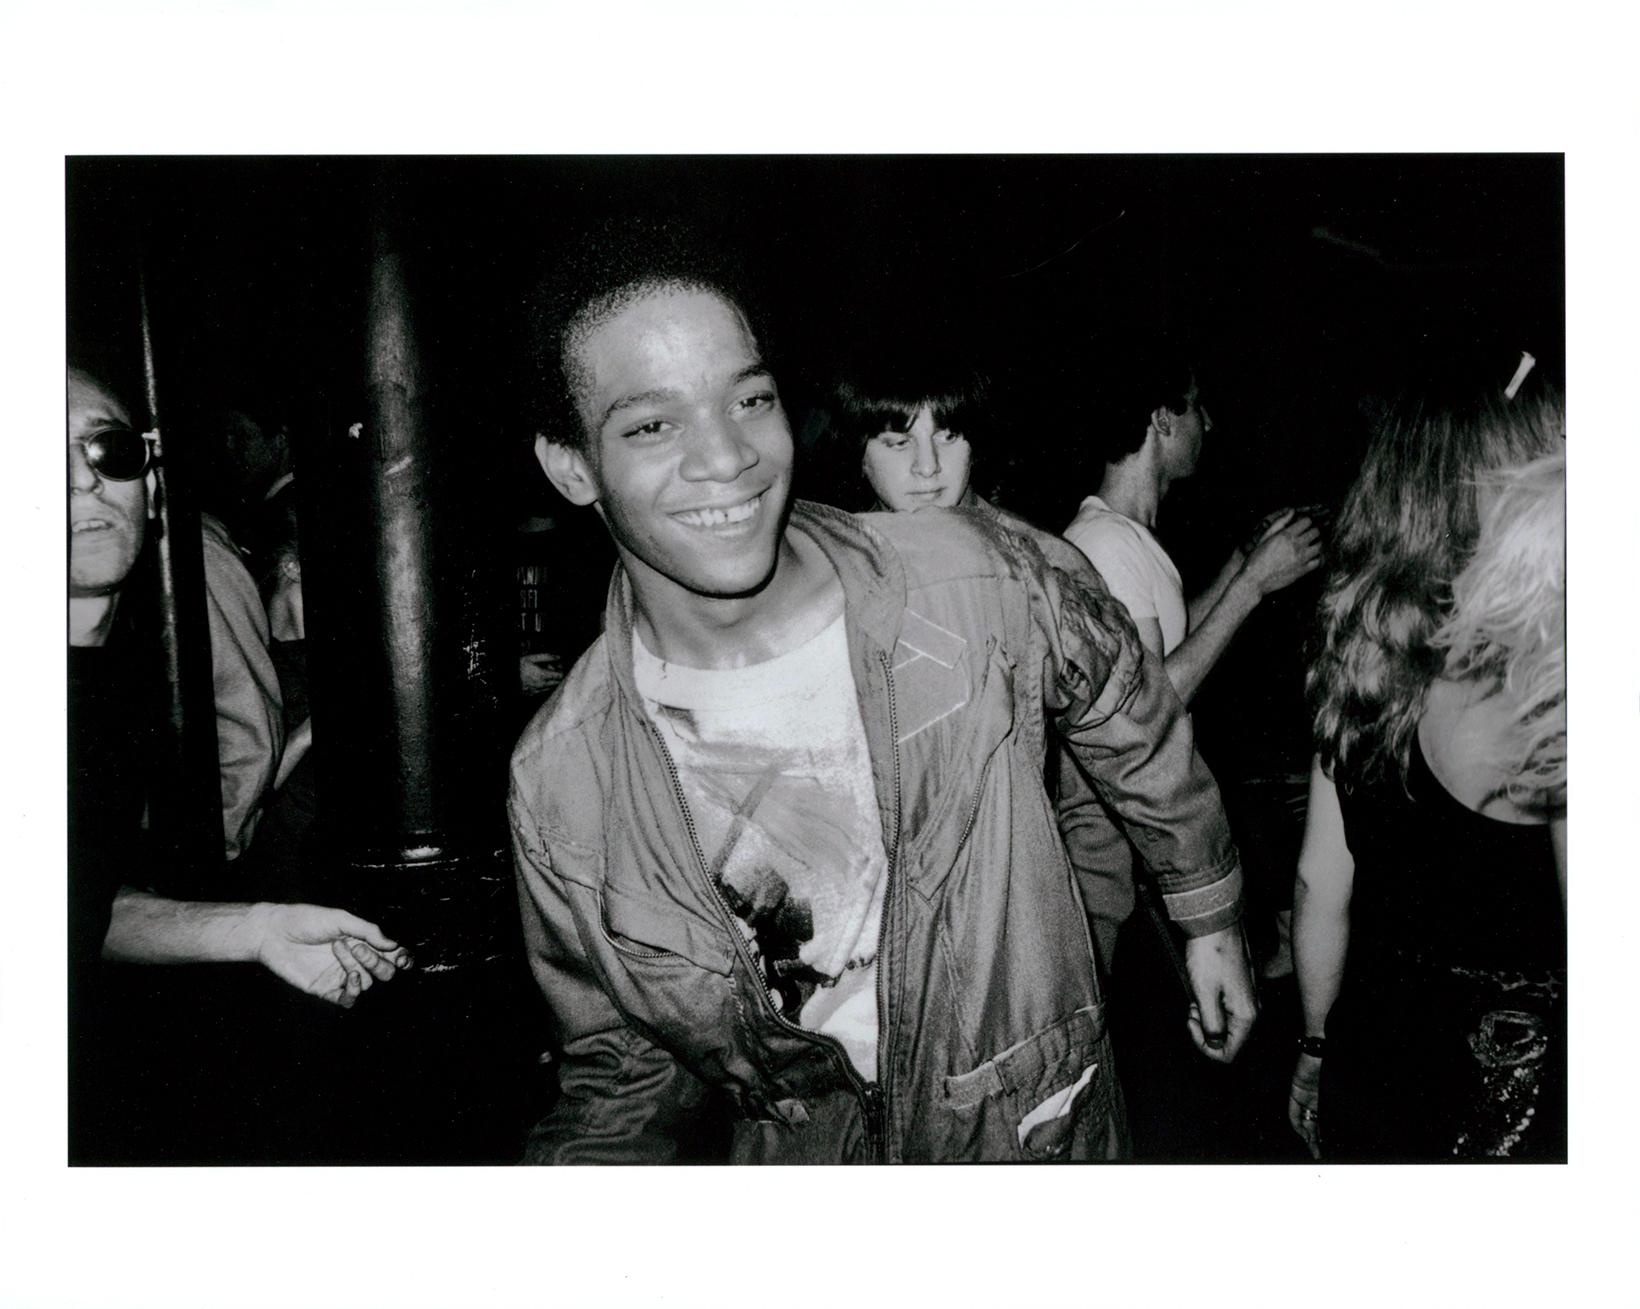 BASQUIAT-Tanzen im Mudd Club, 1979 (Basquiat Boom für Realfotografie) – Photograph von Nicholas Taylor